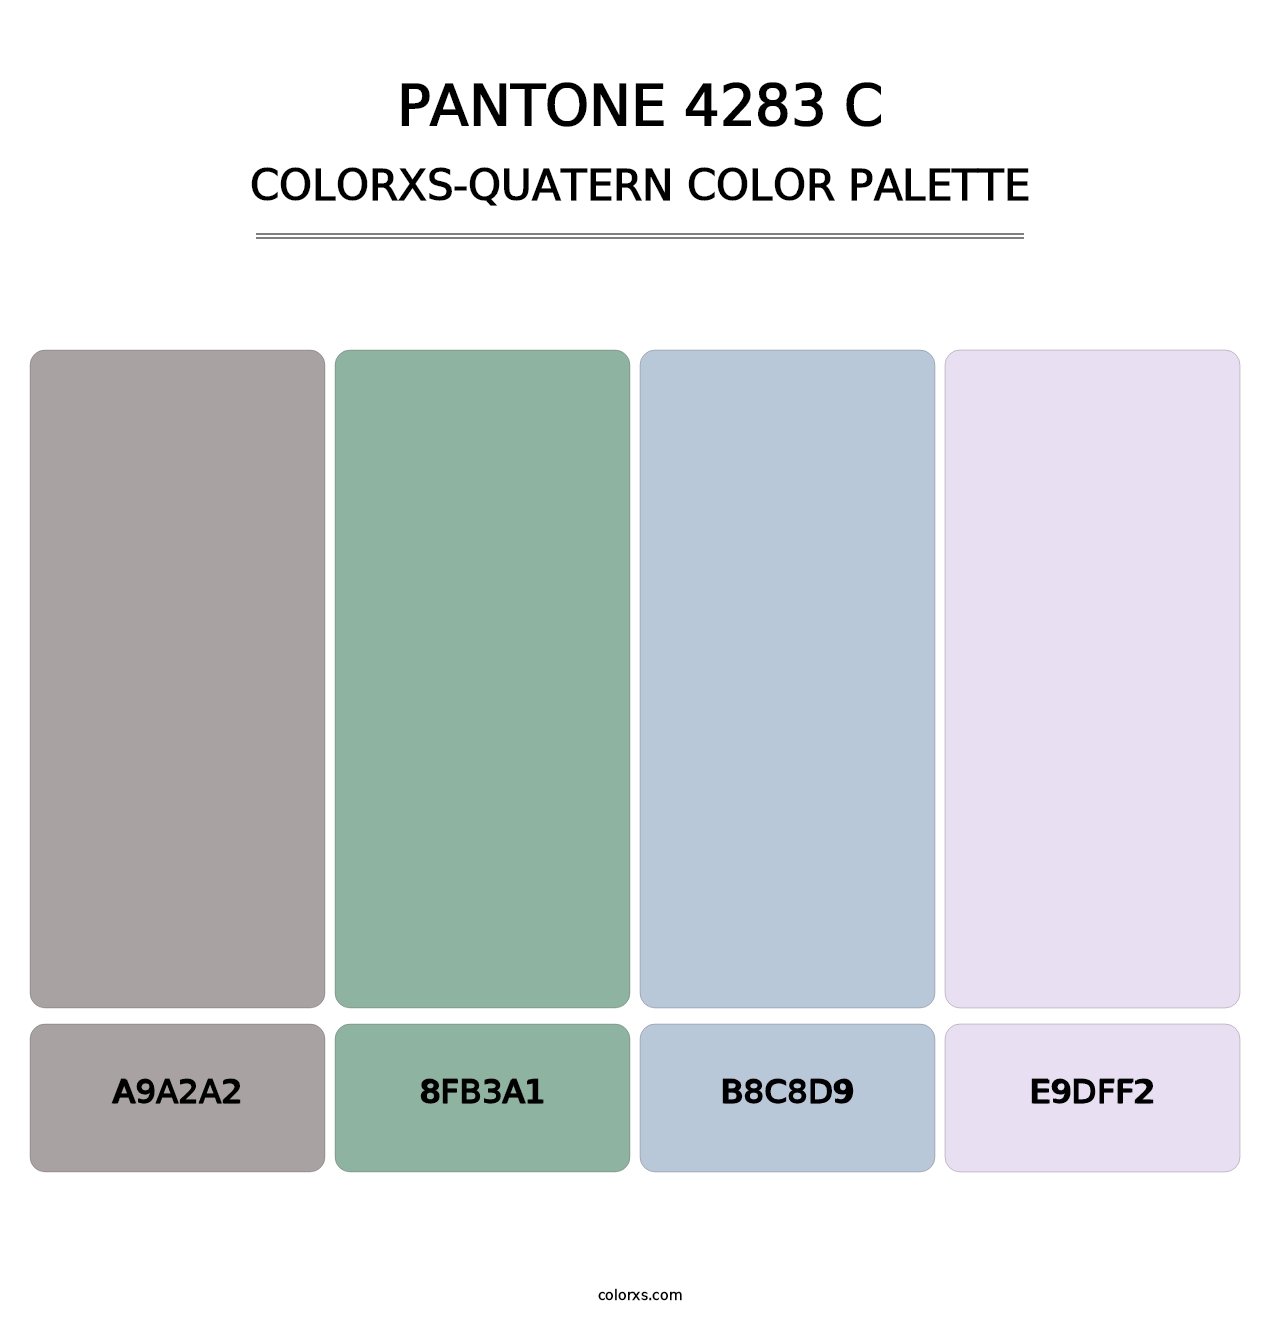 PANTONE 4283 C - Colorxs Quatern Palette